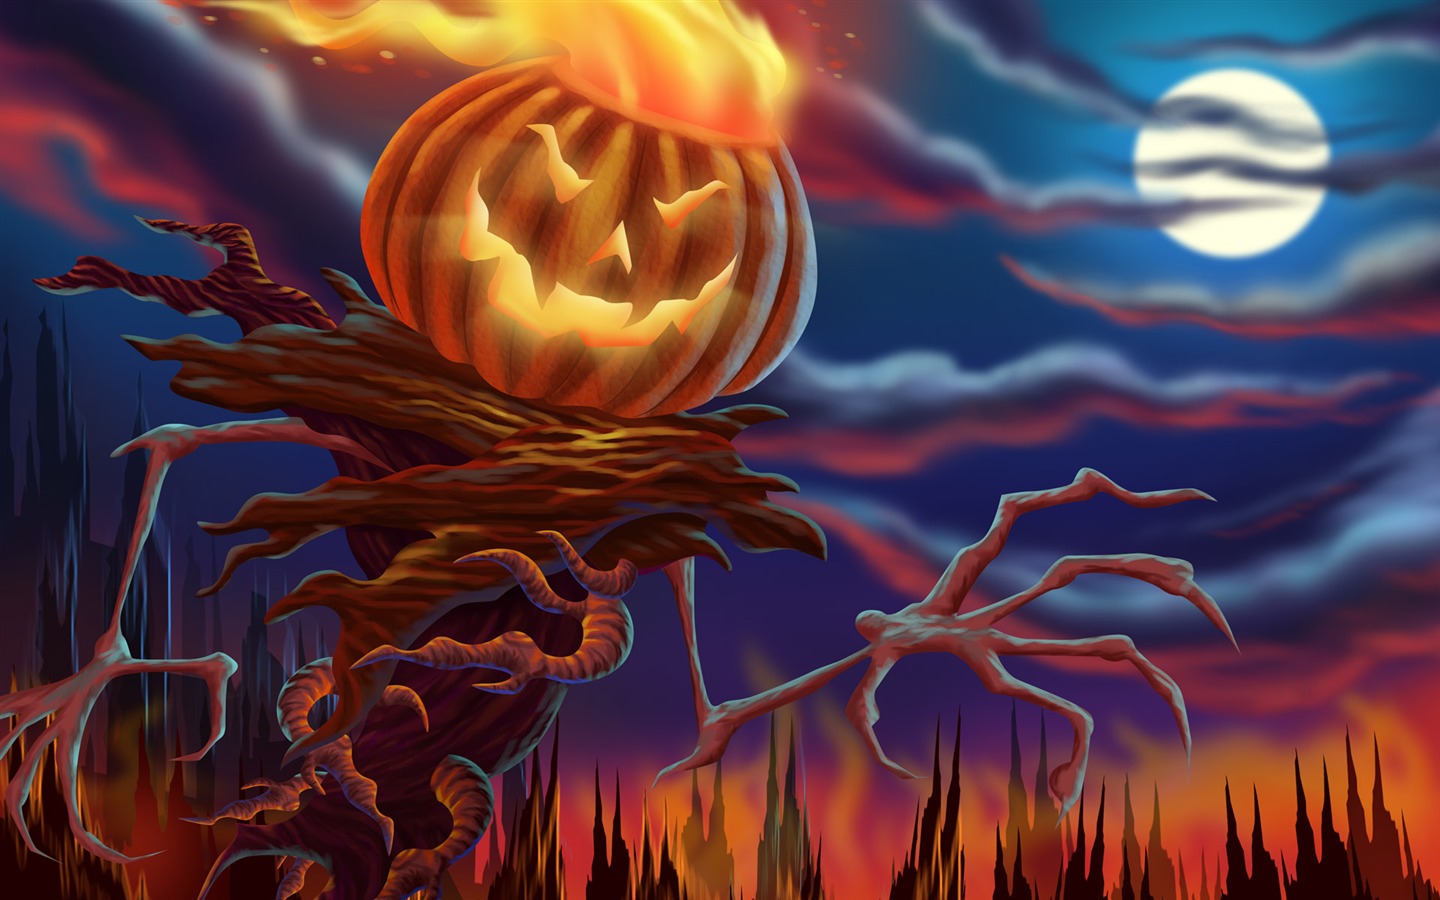 Fondos de Halloween temáticos (3) #1 - 1440x900